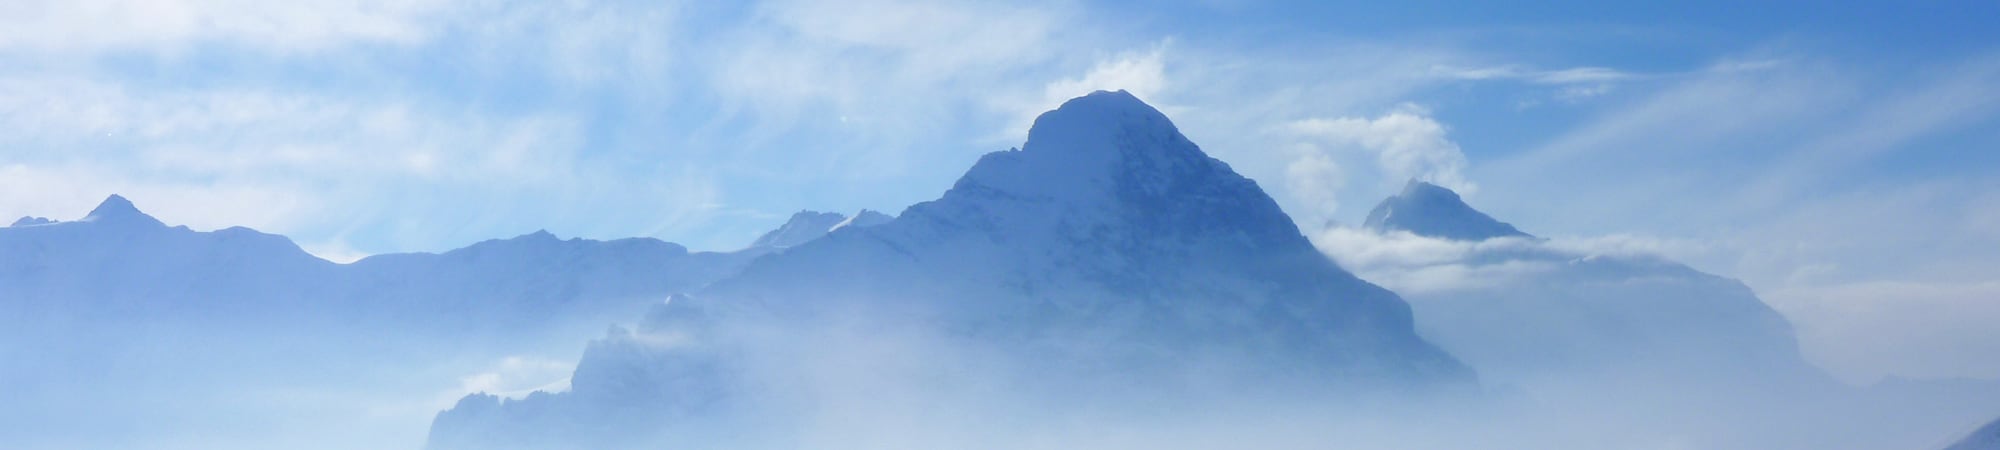 Eiger, Mönch et la Jungfrau